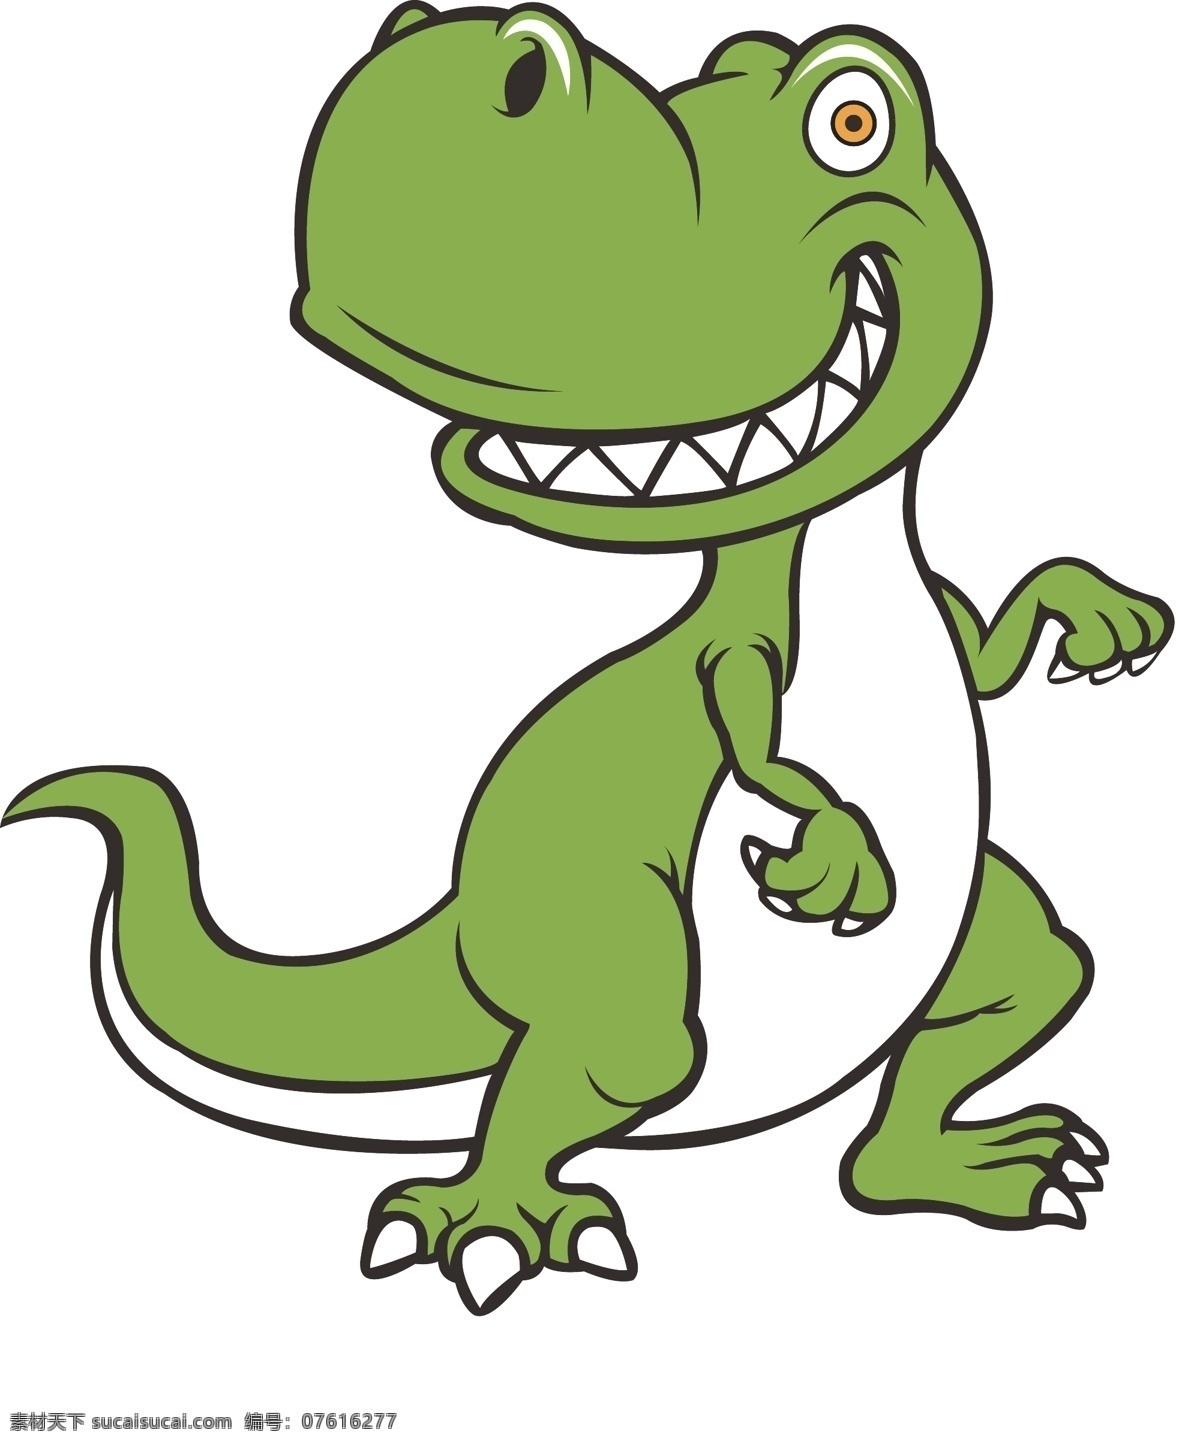 卡通 卡通恐龙 卡通动物 恐龙 卡通画 儿童版恐龙 邪恶的恐龙 恶作剧的恐龙 霸王龙 动物矢量 生物世界 野生动物